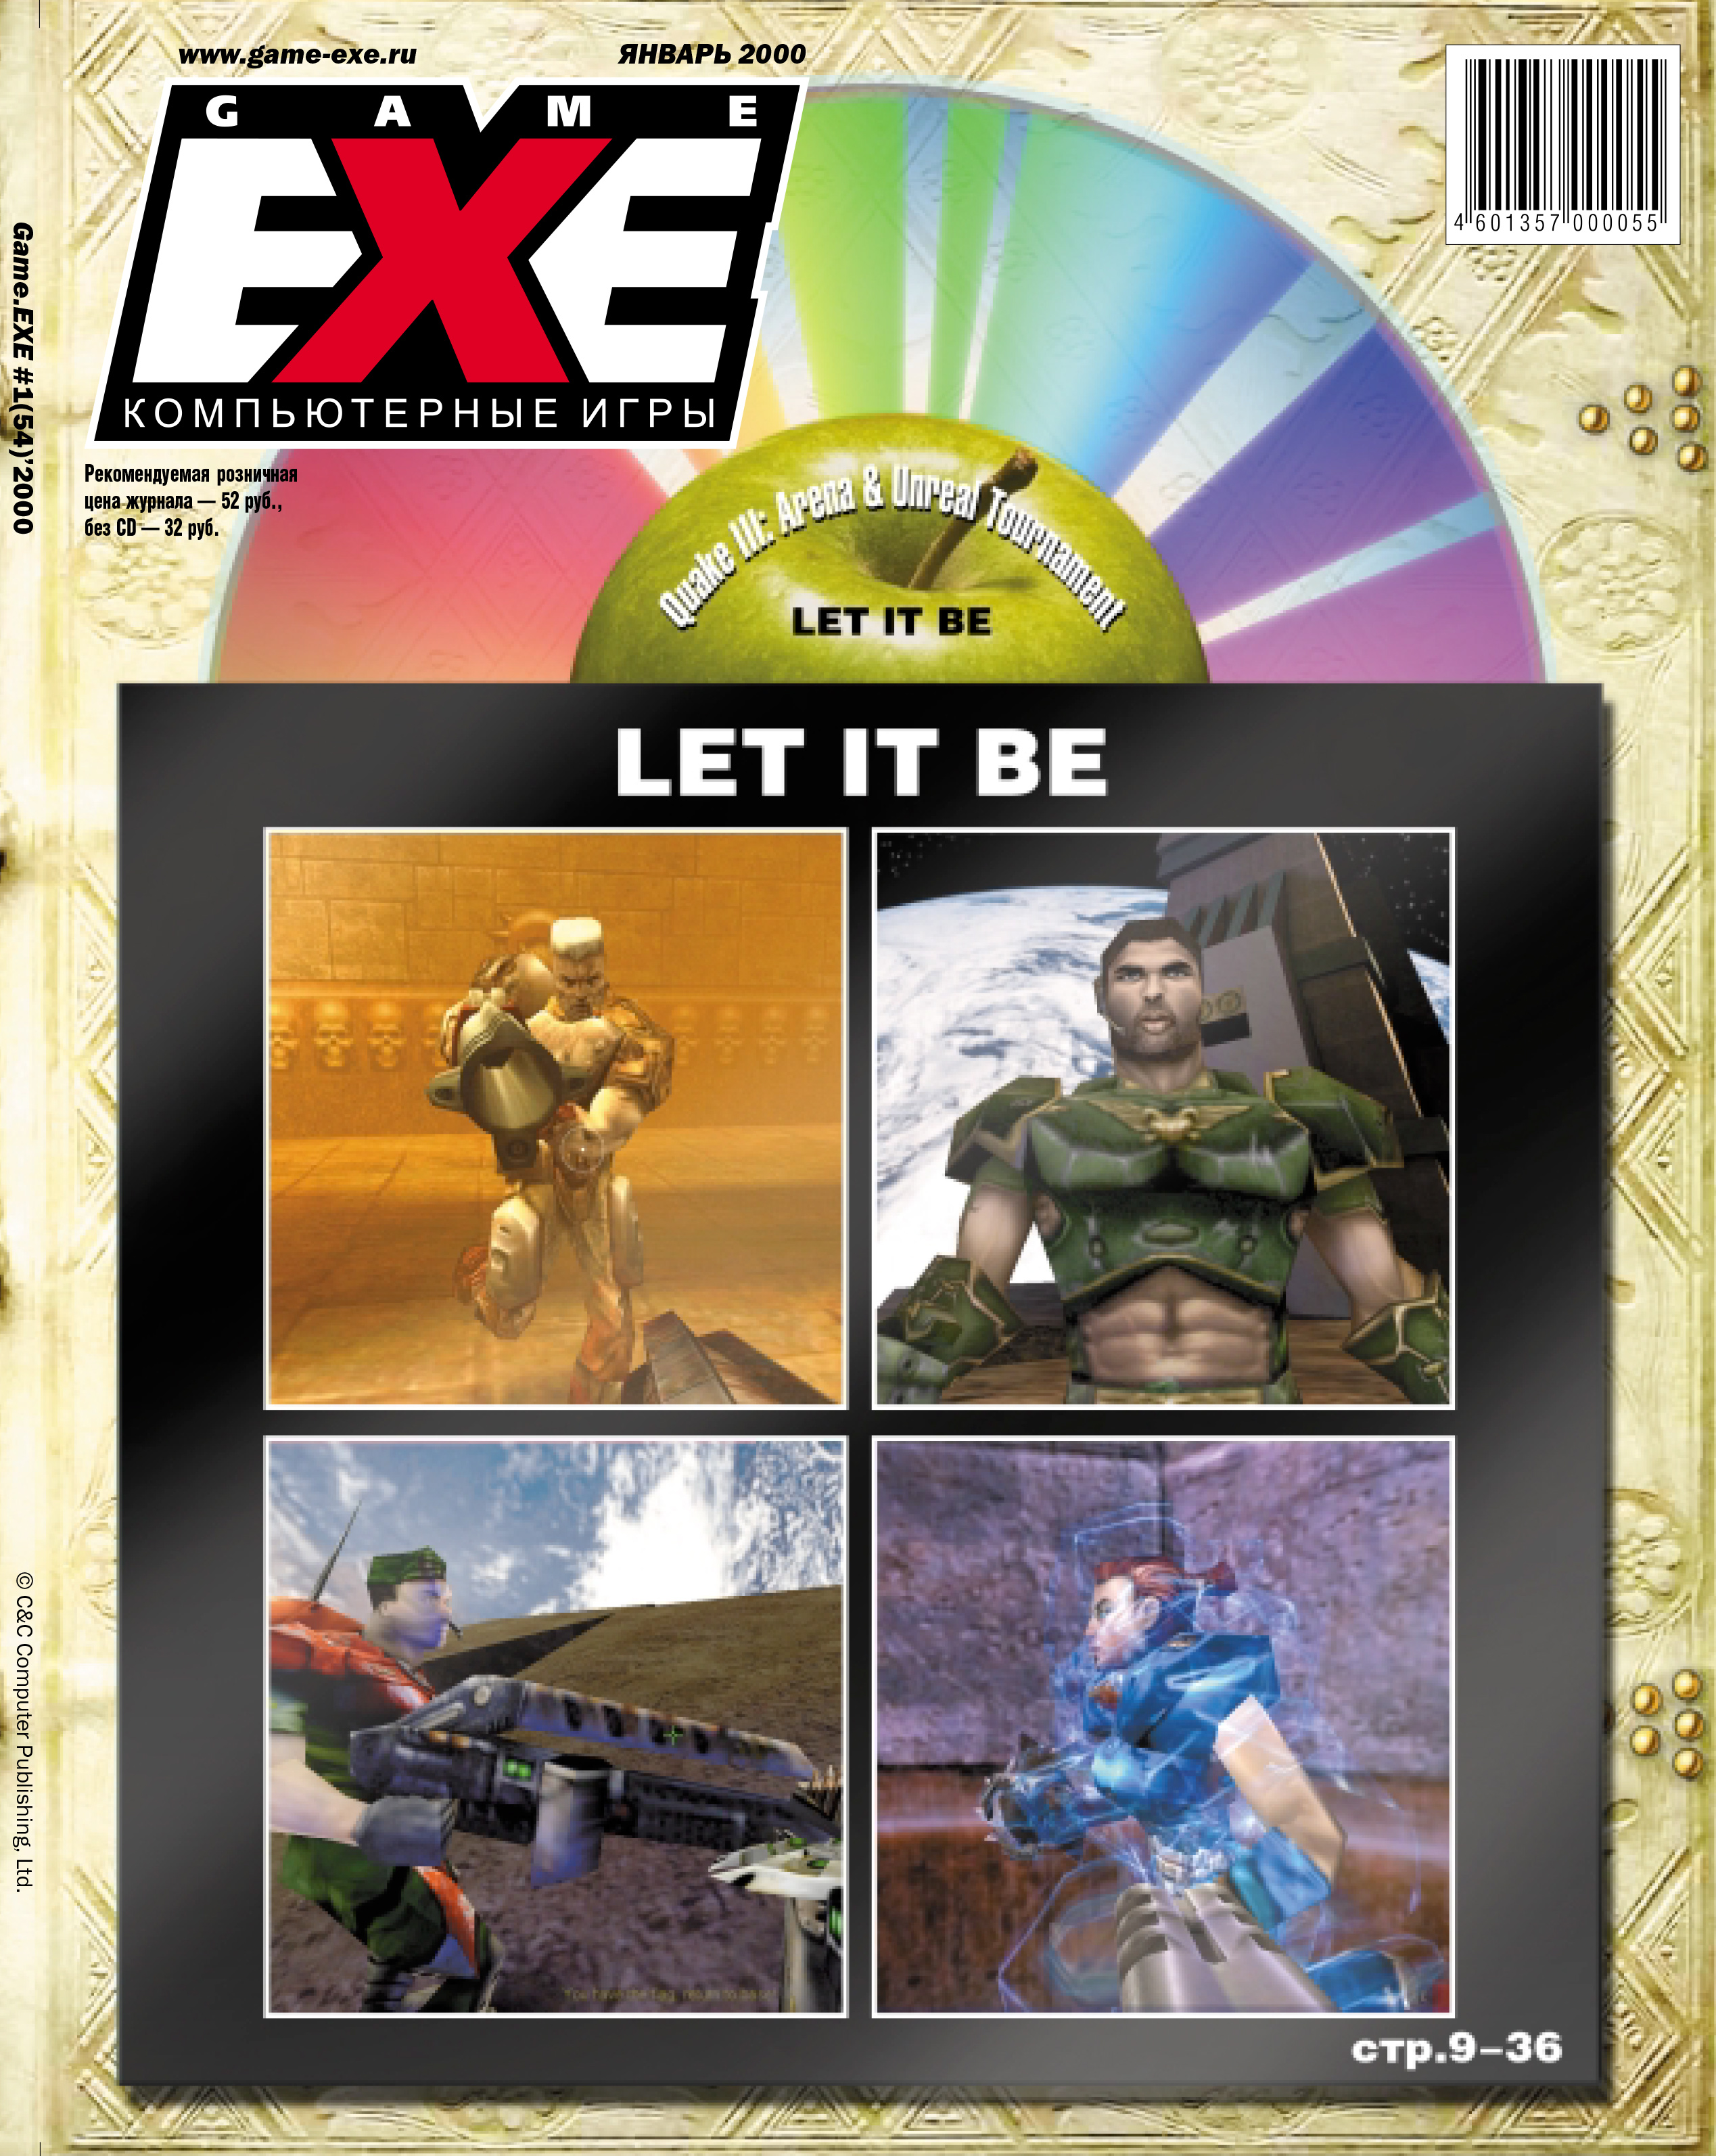 Download game exe. Game exe 2000. Game exe журнал. Журнал game exe 1997. Журналы про игры 2000.